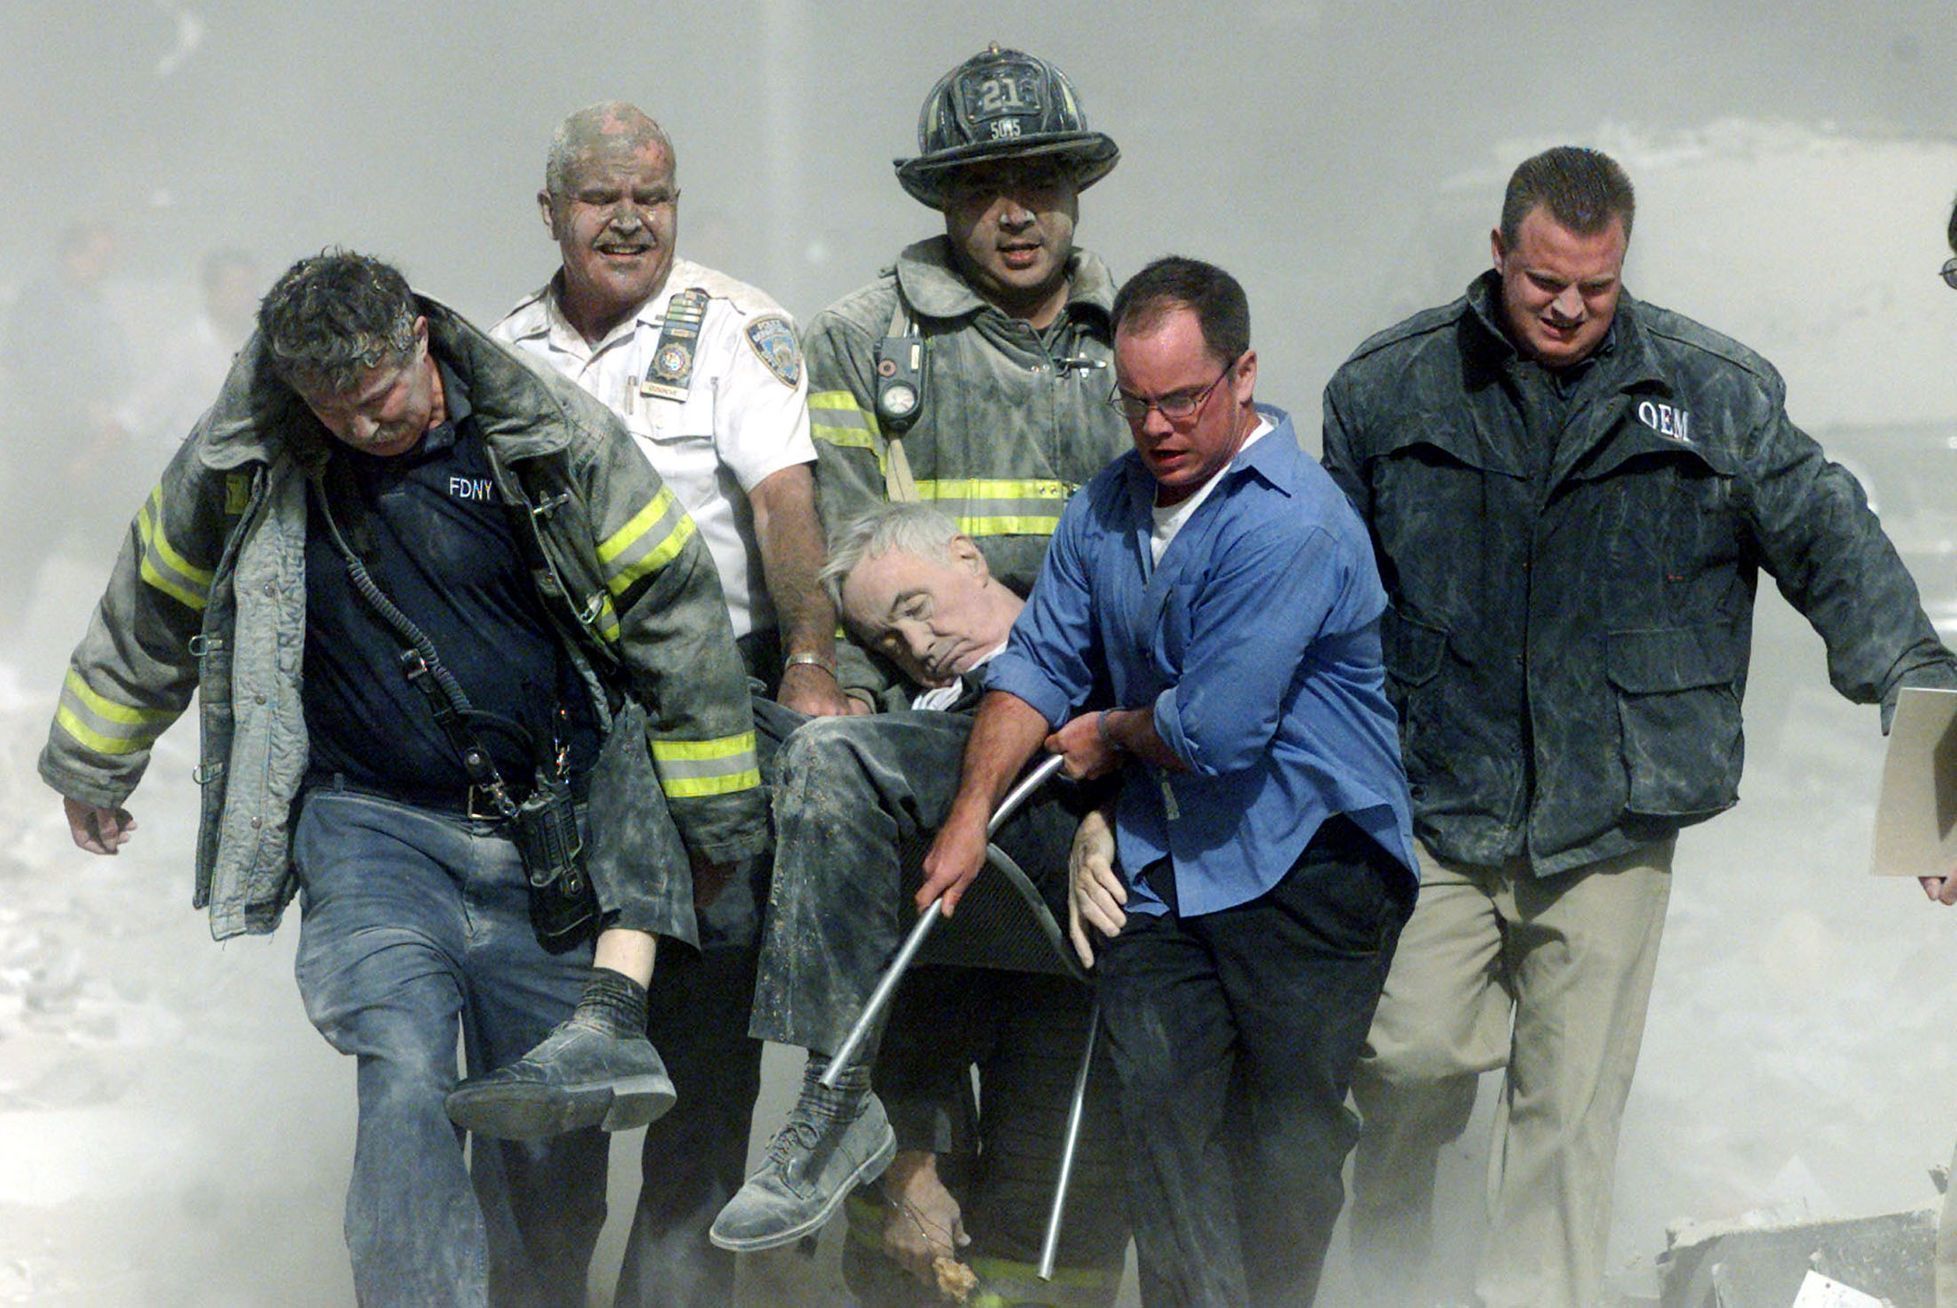 Fotogalerie / 11. 9. 2001 / 11. září 2001 / Teroristický útok / Terorismus / USA / Historie / Výročí / Reuters / 11